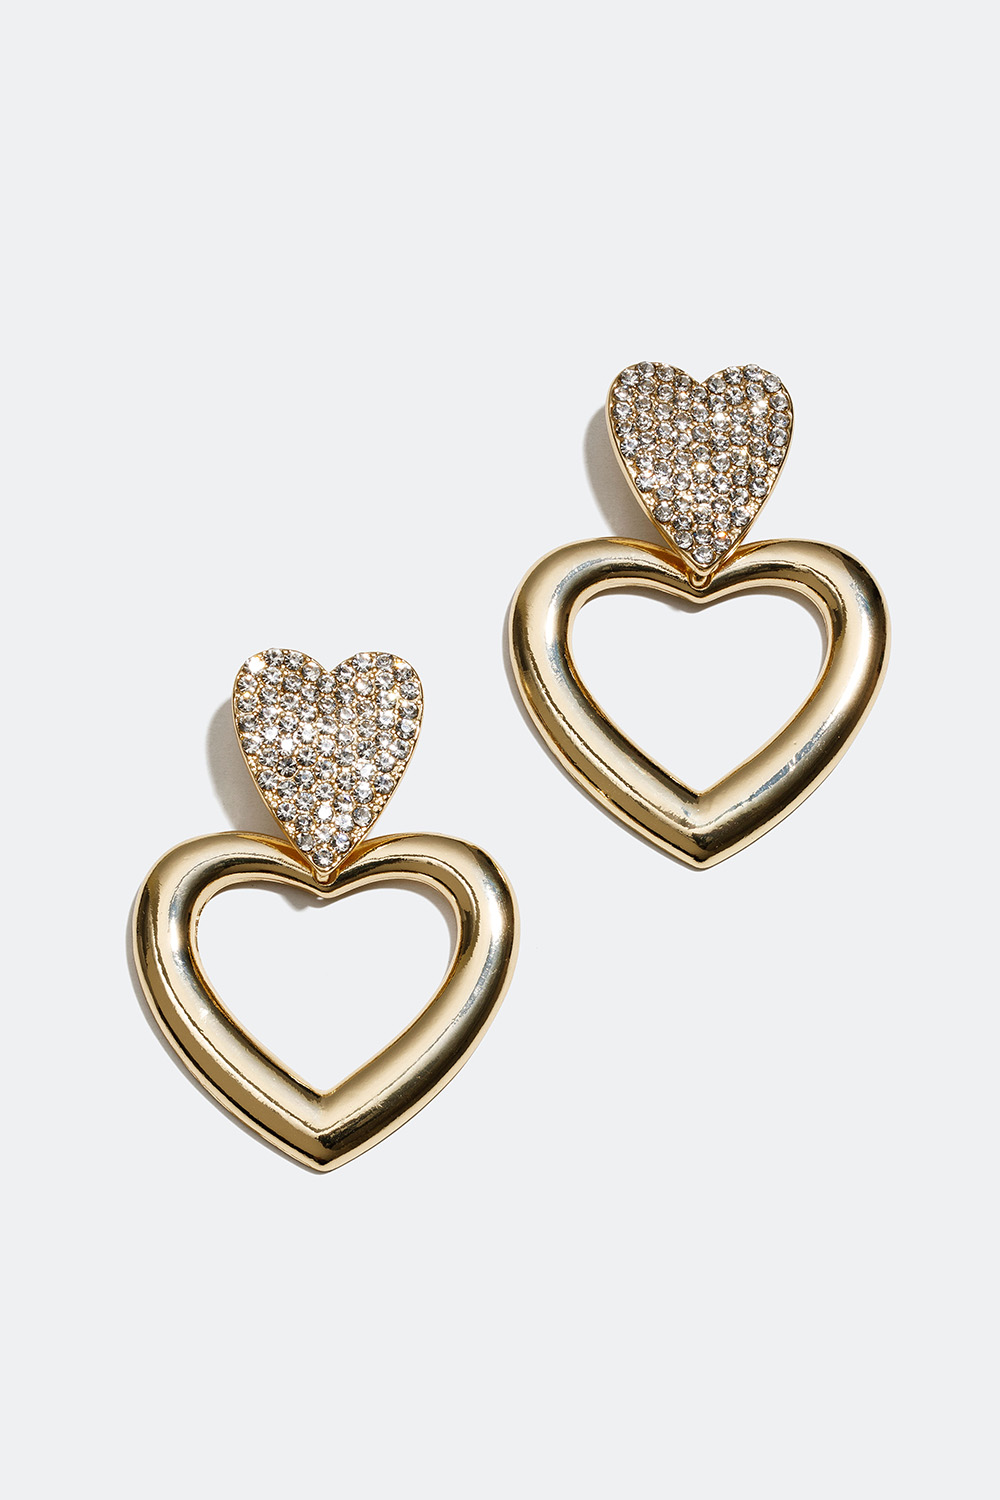 Store gullfargede øredobber med hjerter og glassteiner i gruppen Smykker / Øredobber hos Glitter (253004532002)